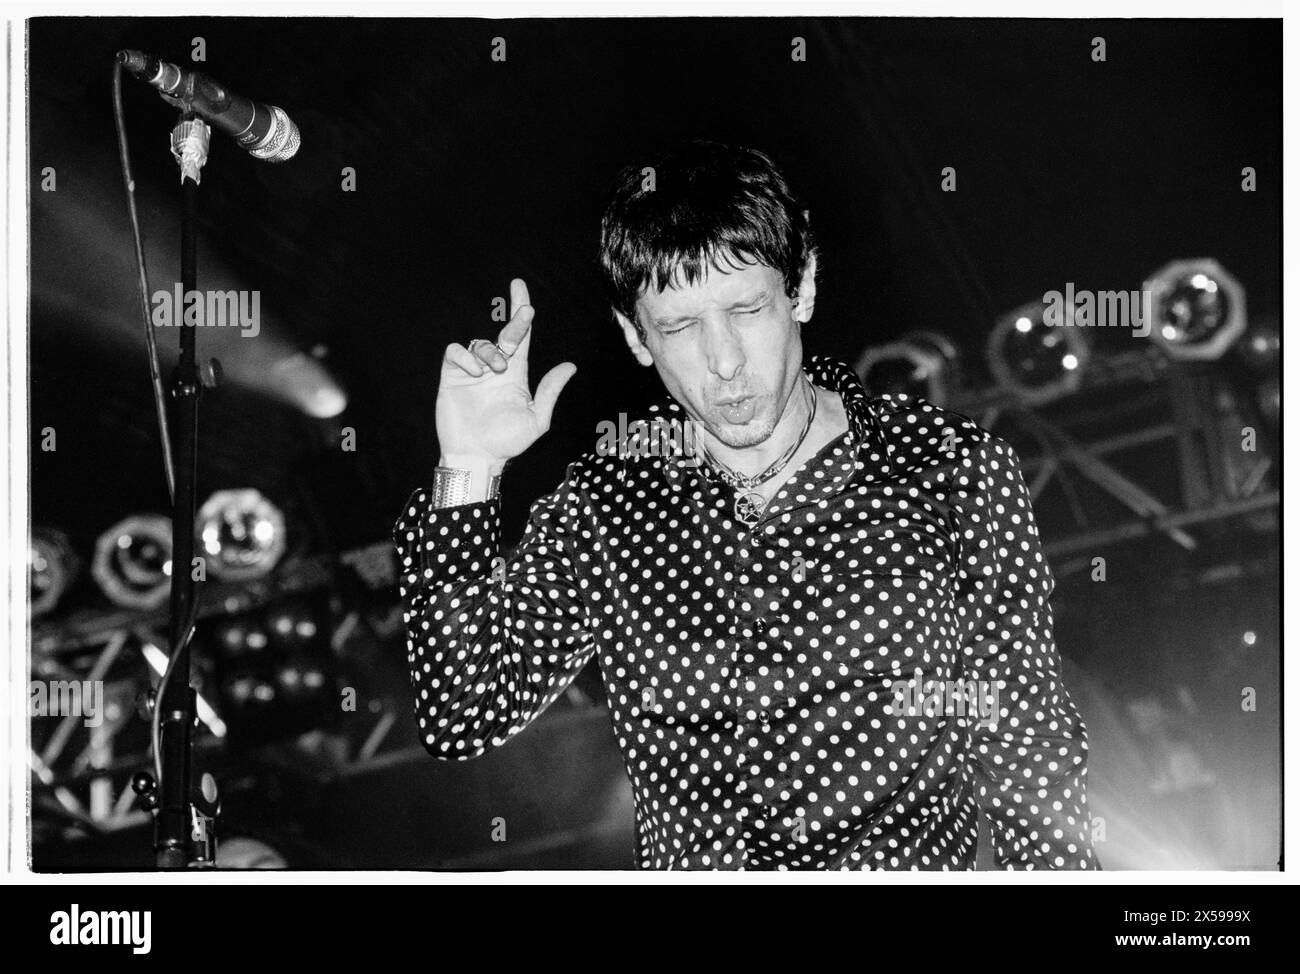 MERCURY Rev, READING FESTIVAL CONCERT, 2001: Jonathan Donahue della band Mercury Rev on the Melody Maker Stage al Reading Festival, Reading, Inghilterra, Regno Unito, il 26 agosto 2001. Foto: Rob Watkins. INFO: Mercury Rev, un gruppo indie rock statunitense formatosi nel 1989 a Buffalo, New York, ha ottenuto il plauso per i loro paesaggi sonori sognanti e l'approccio sperimentale. Successi come "Goddess on a Hiway" mostrano le loro melodie eteree e influenze psichedeliche, consolidando il loro status di pionieri indie rock. Foto Stock